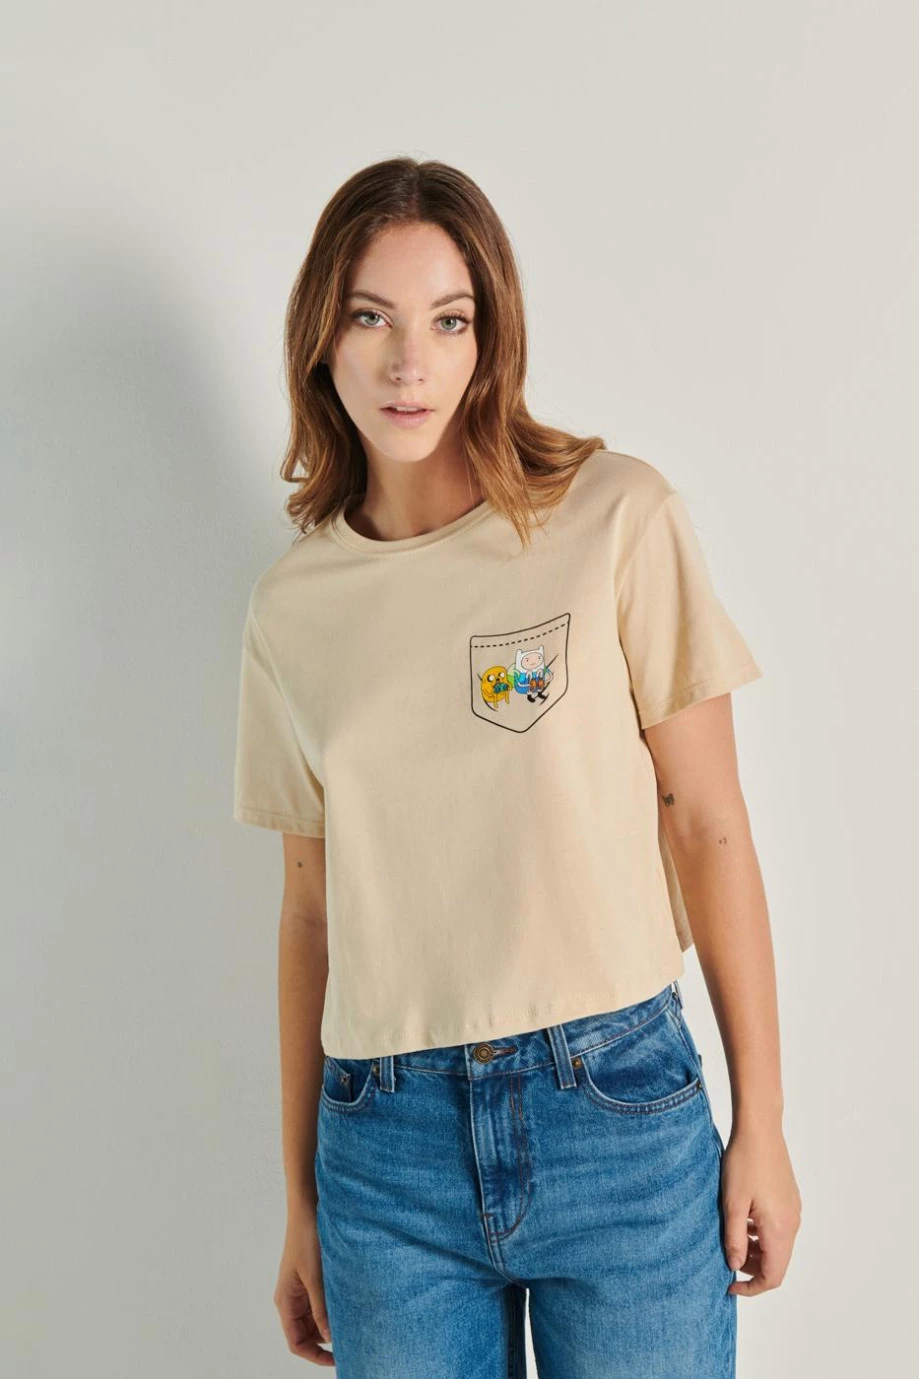 Camiseta kaky clara crop top con diseño de Hora de Aventura en frente